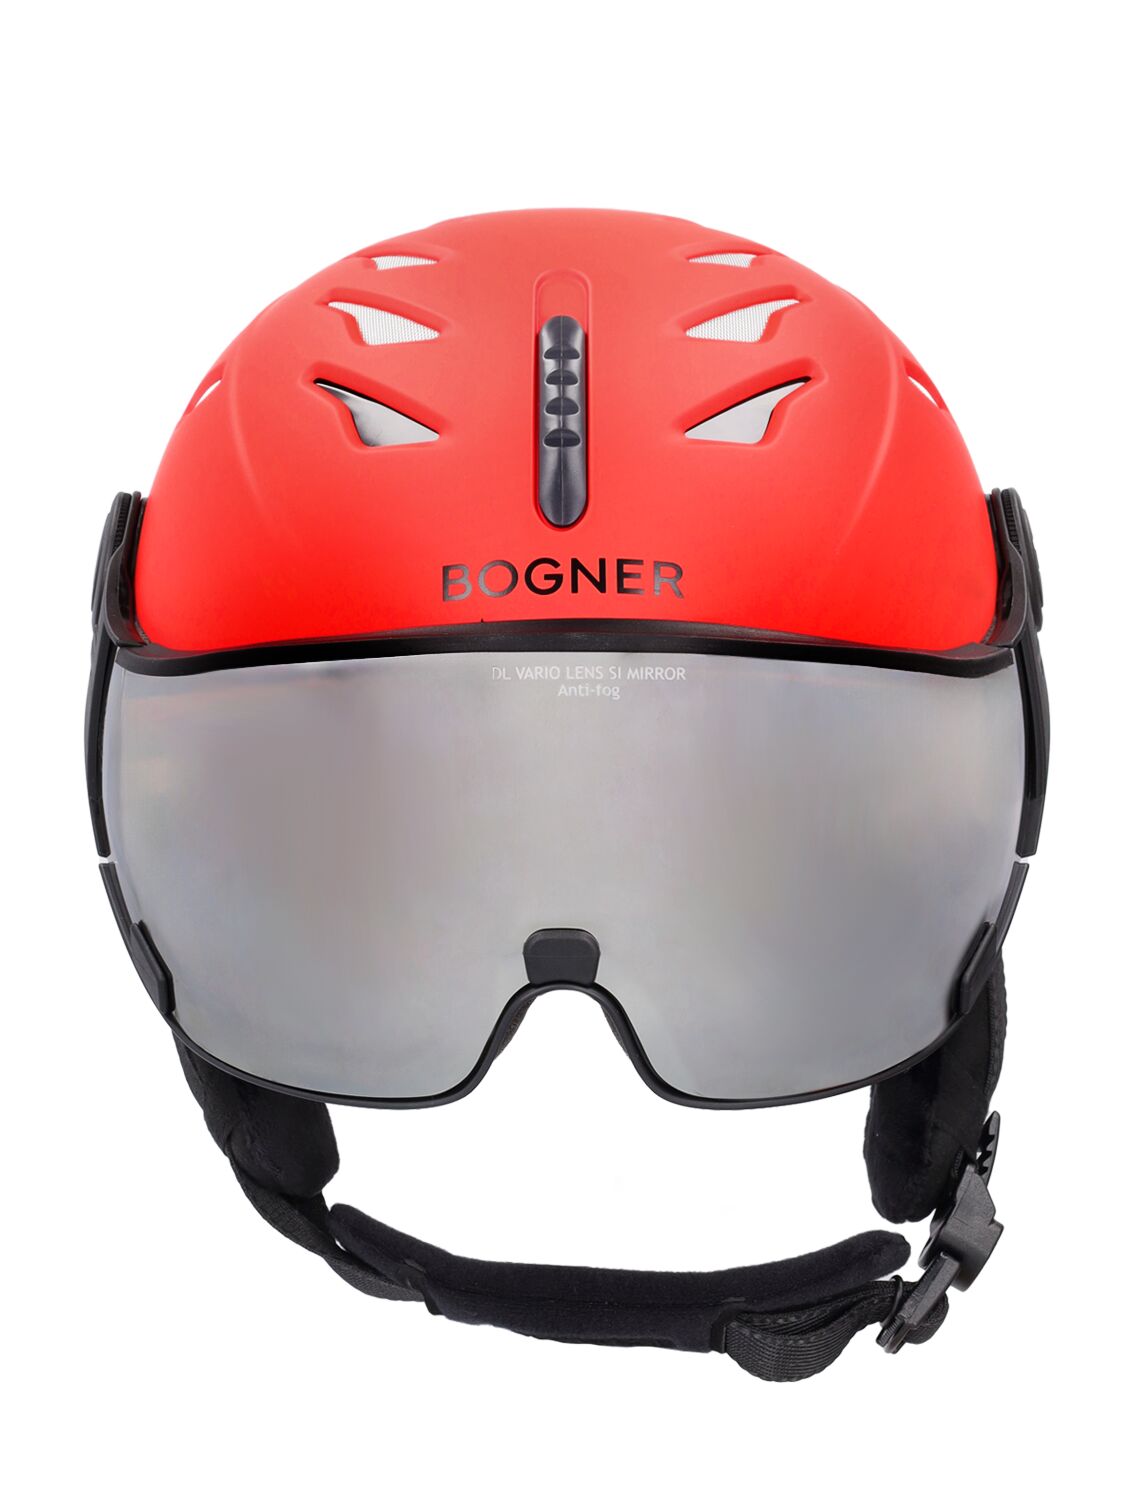 St. Moritz Ski Helmet W/ Visor